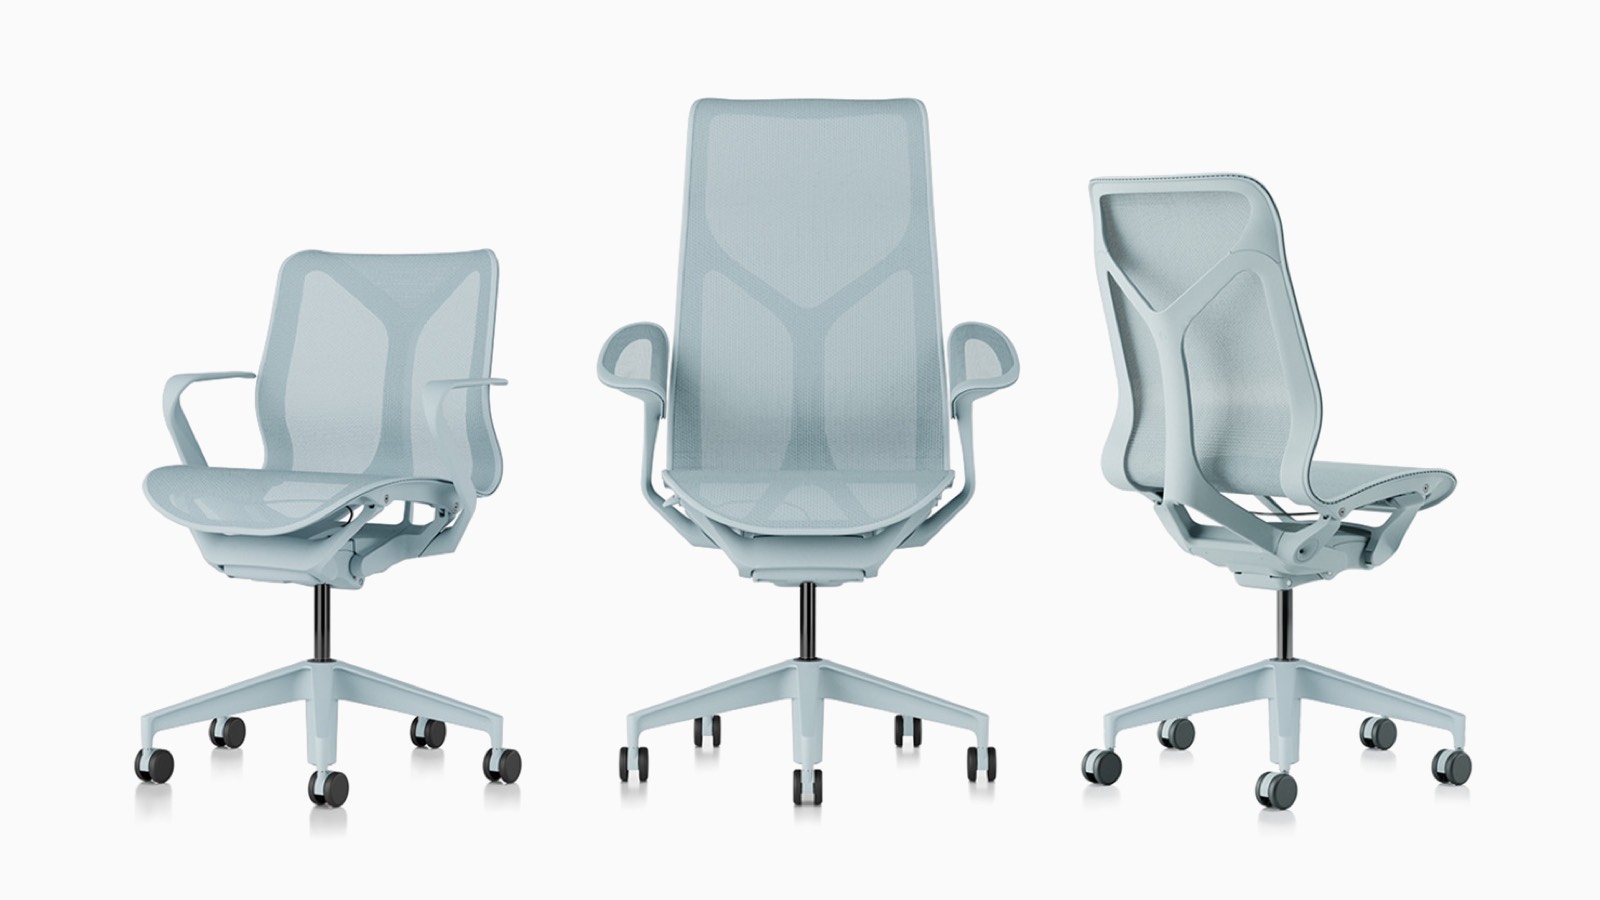 Cadeiras de mesa ergonômicas Low-back, high-back e mid-back Cosm com materiais de suspensão, bases e molduras em azul claro Glacier.